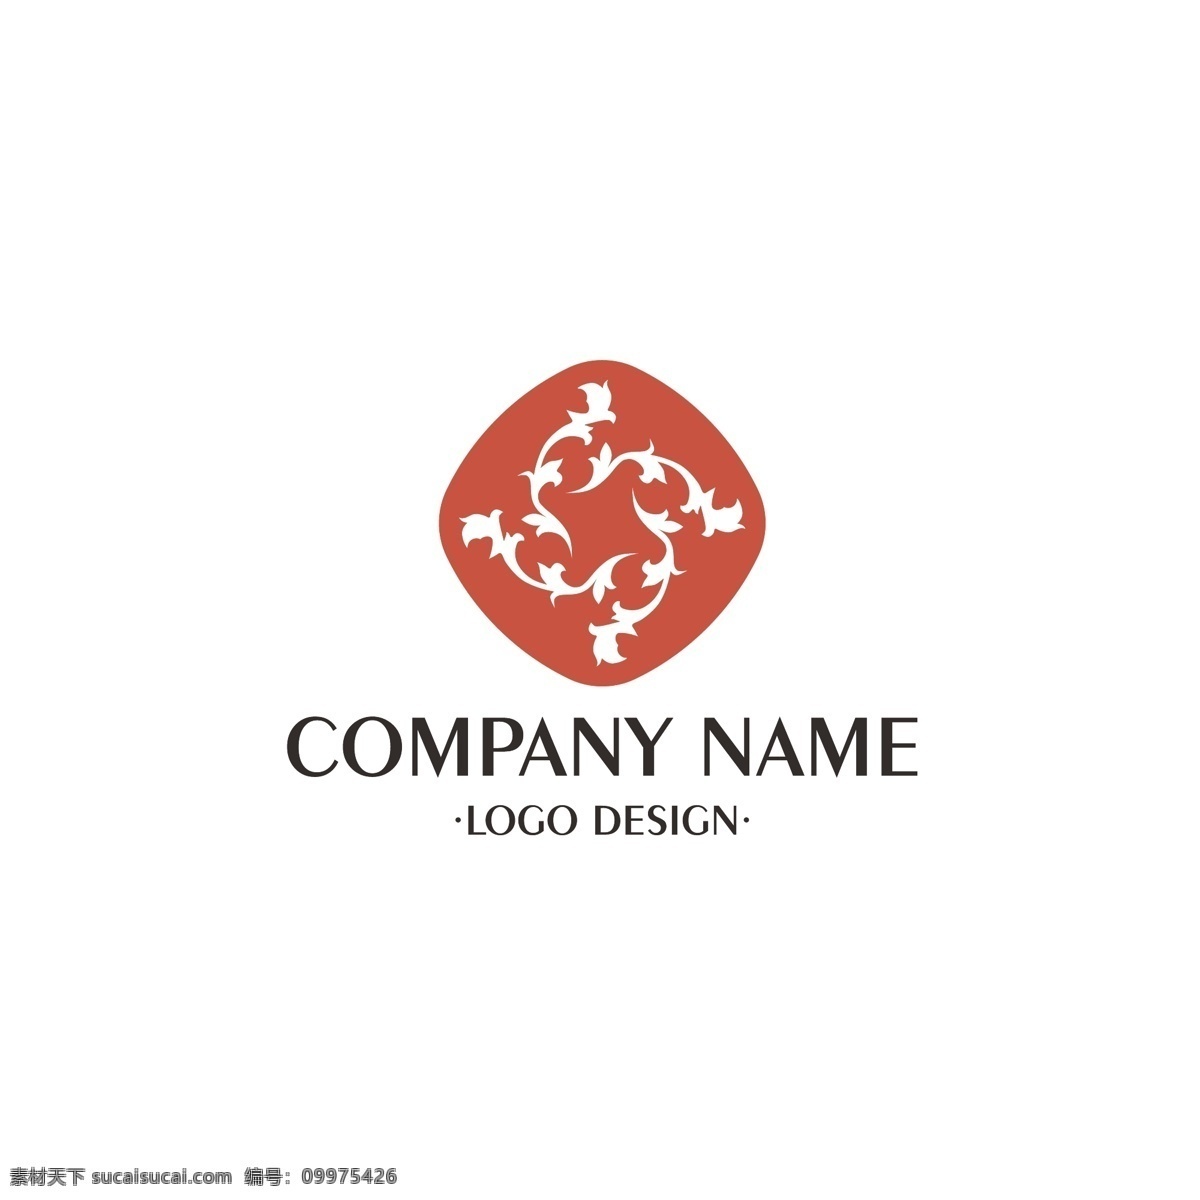 简约 时尚 大气 logo 草本 植物 绿色 企业 商业